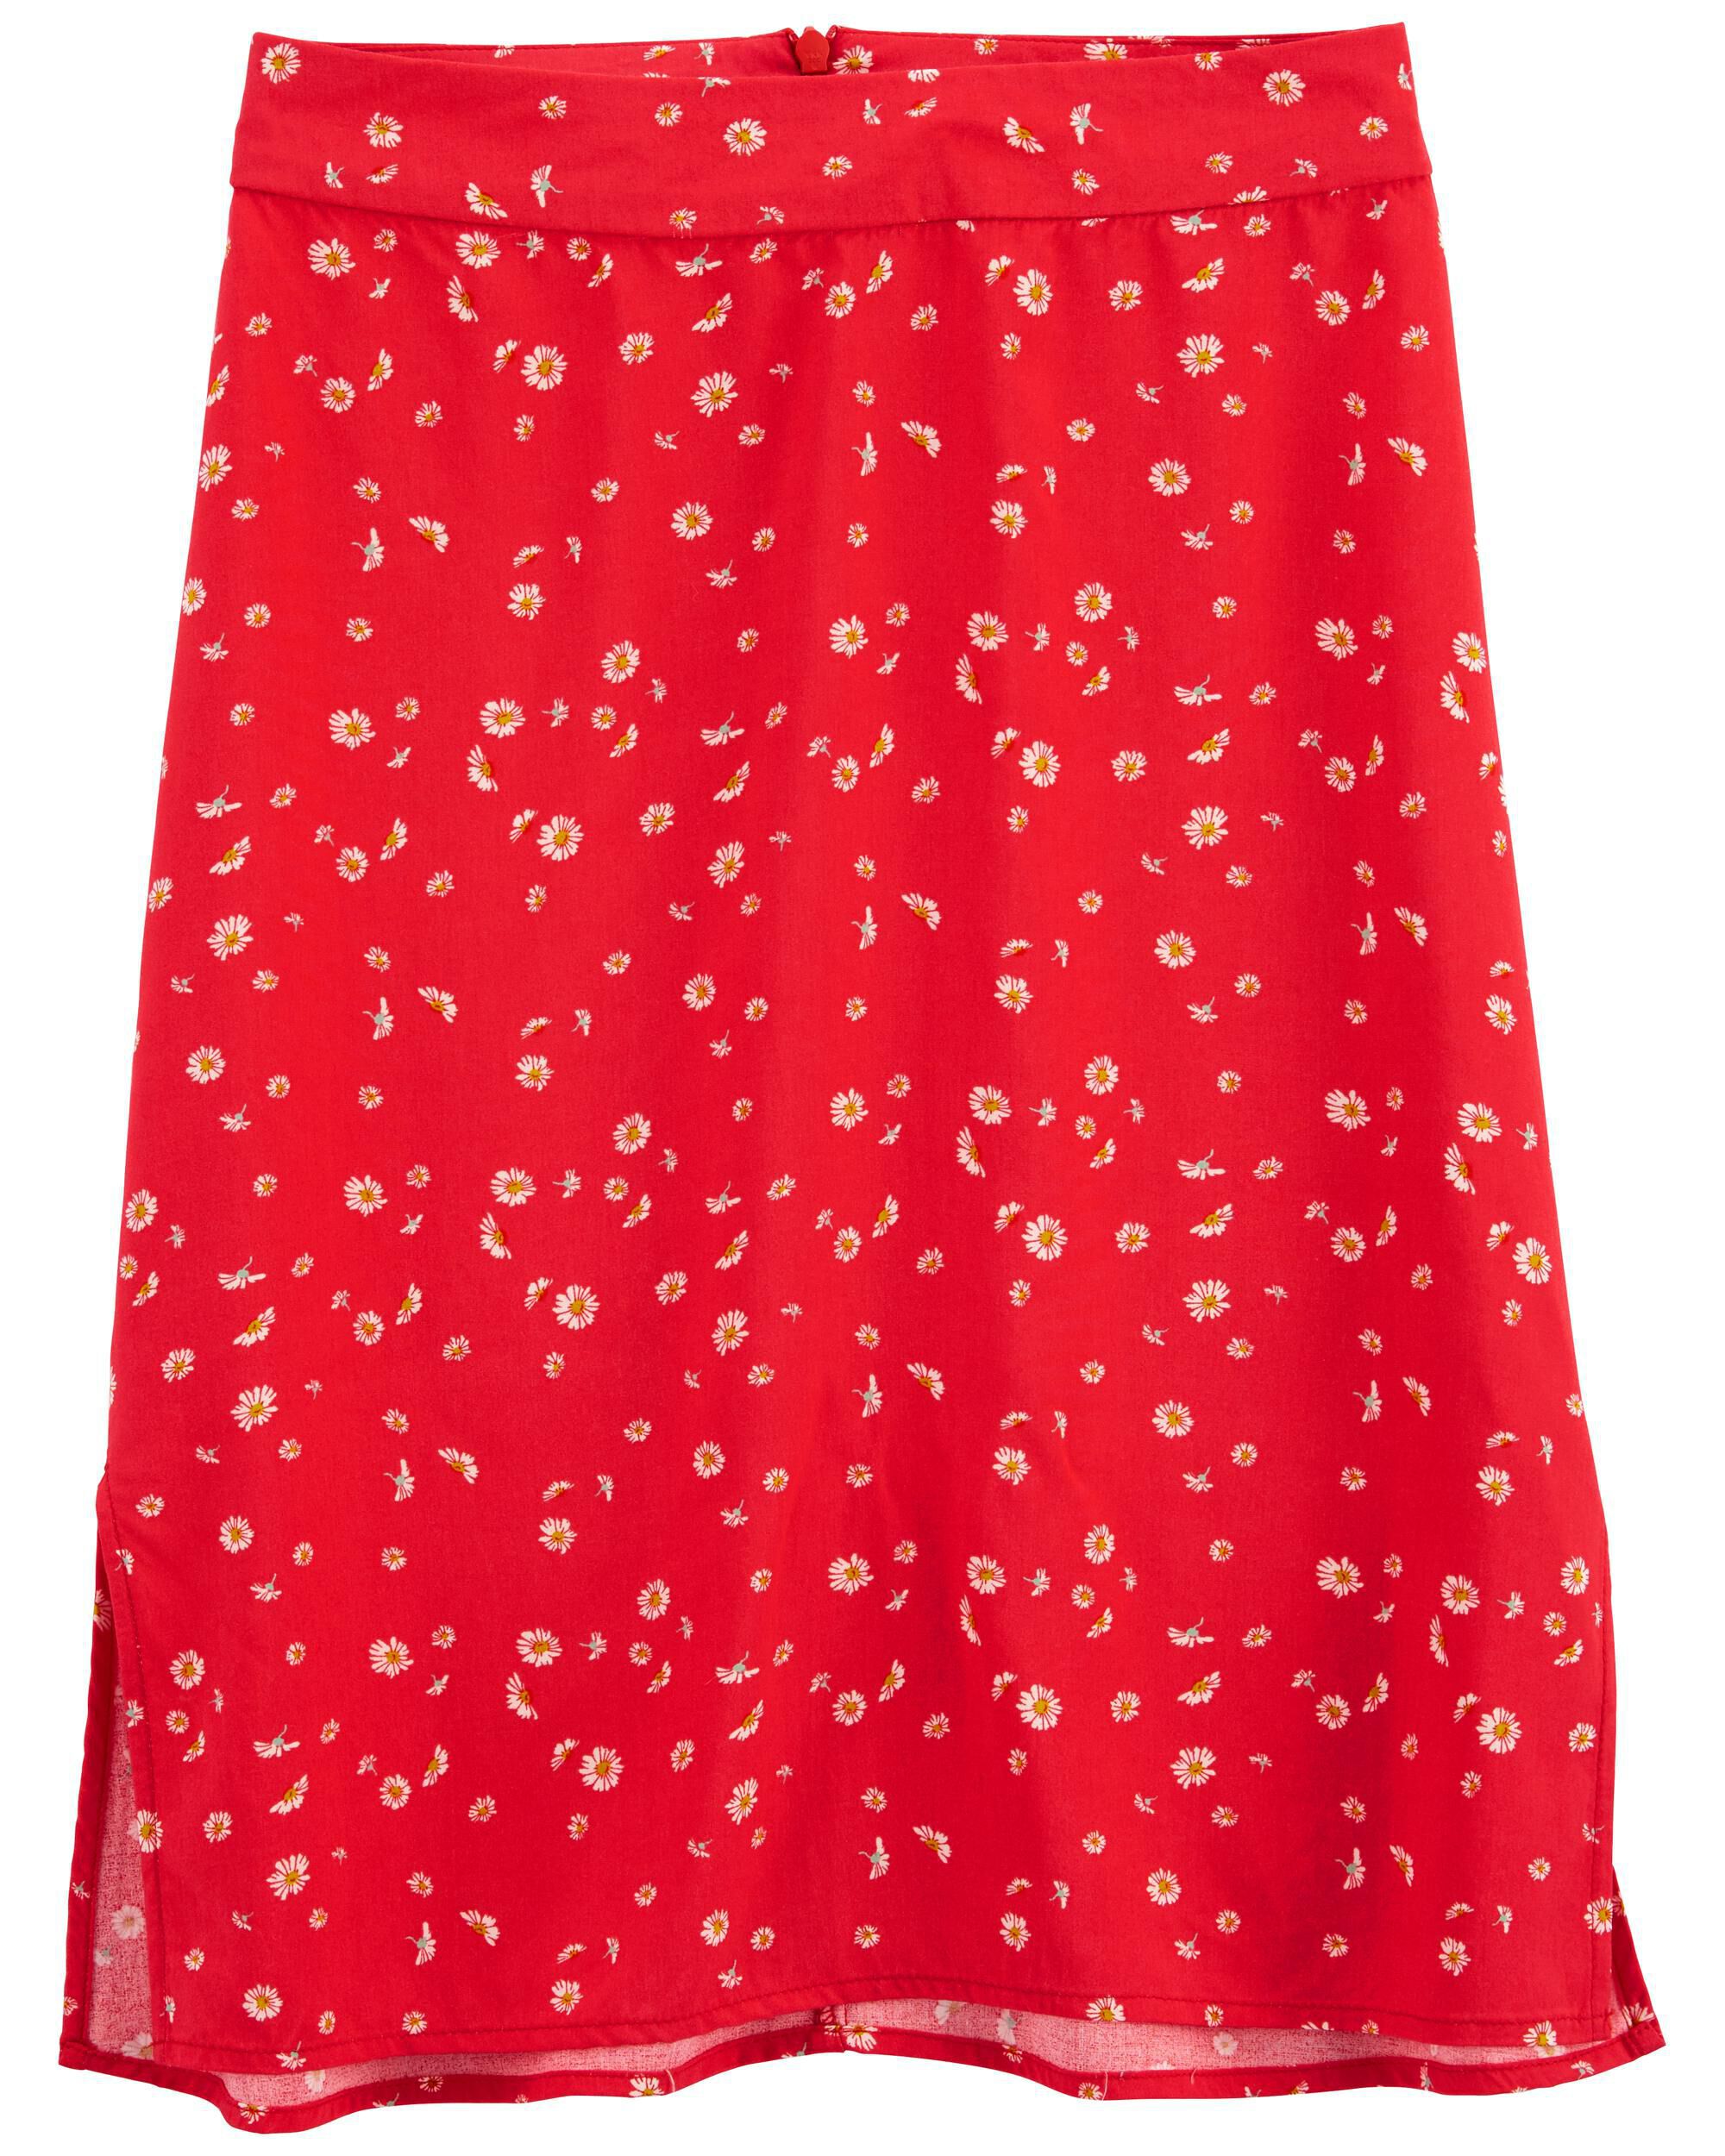 Carters Floral Rayon Midi Skirt